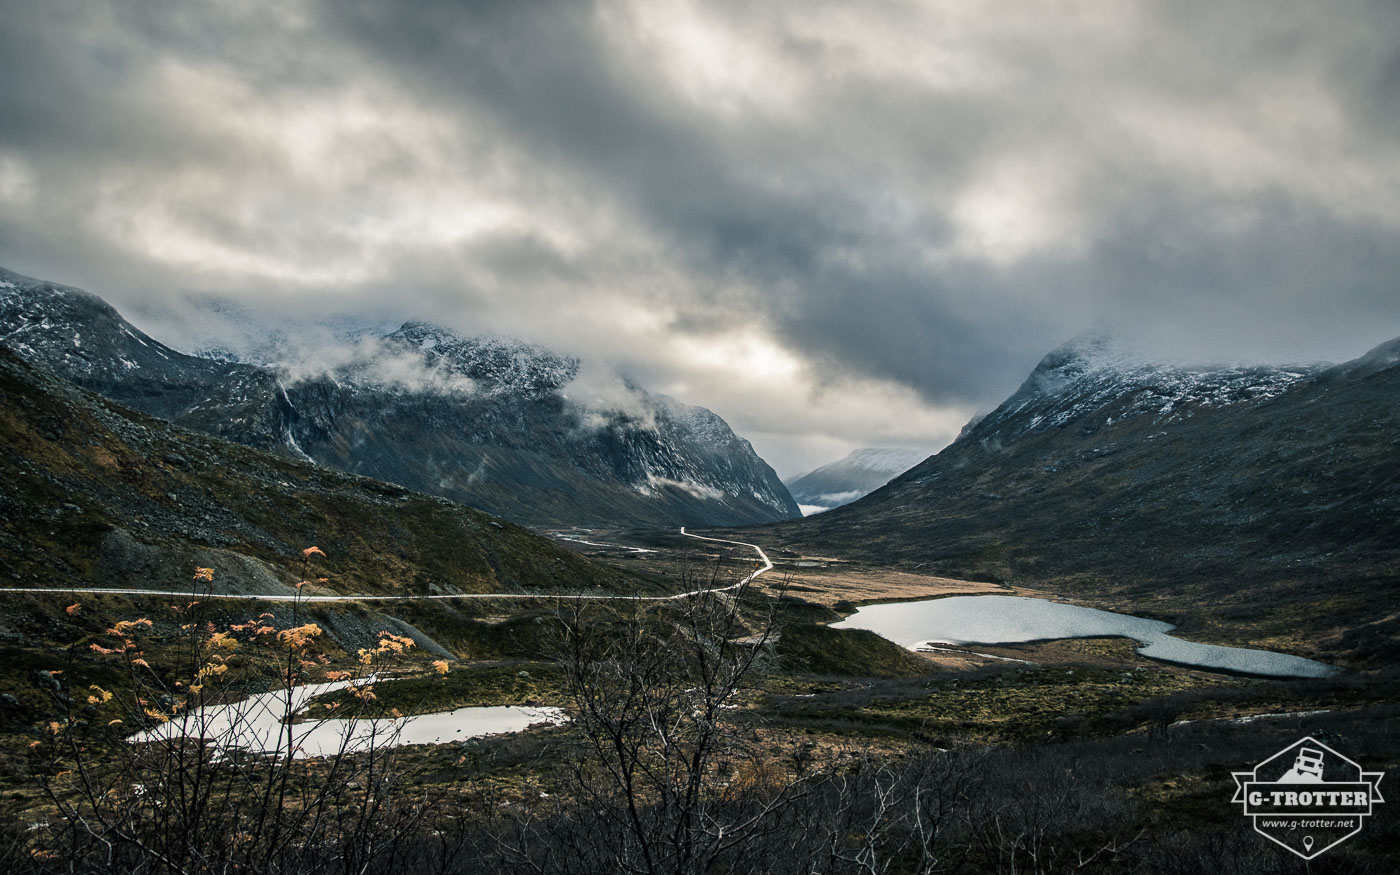 Bild 38 der Bildergalerie “4700 km durch Norwegen”